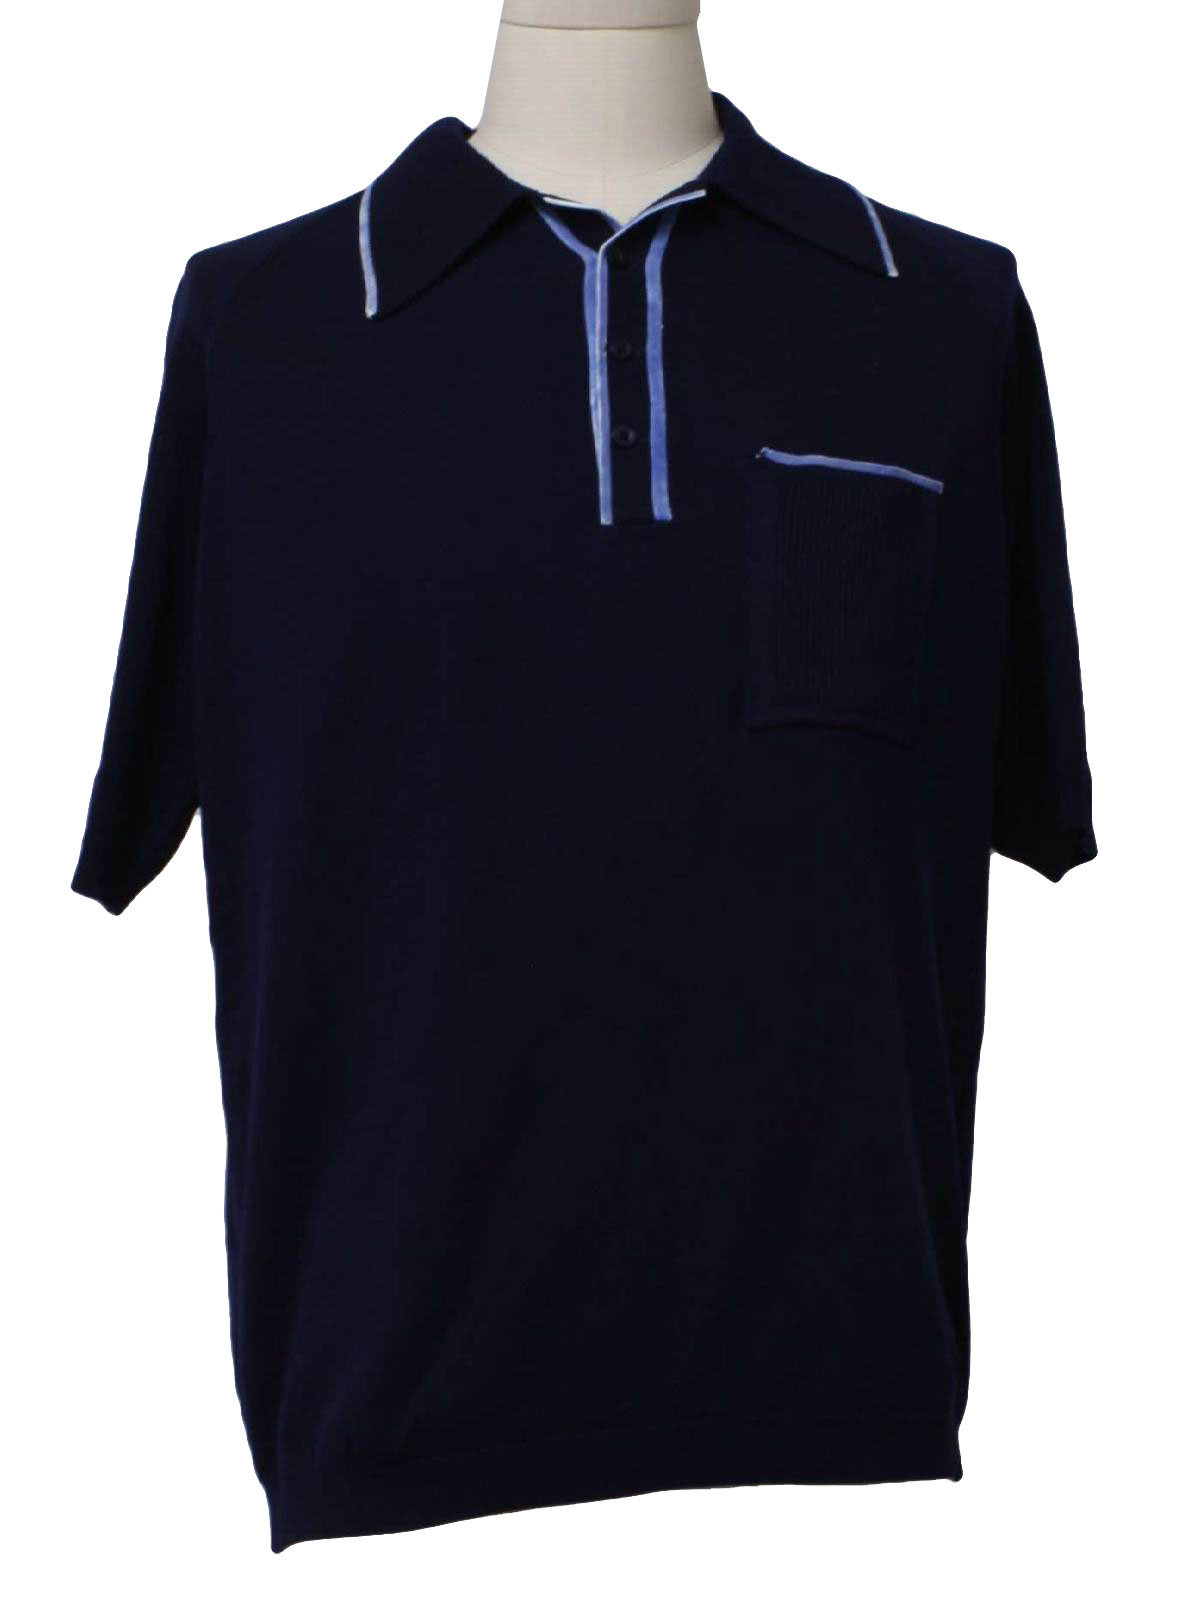 Vintage 1970's Knit Shirt: 70s -Darmen- Mens dark navy blue and light ...